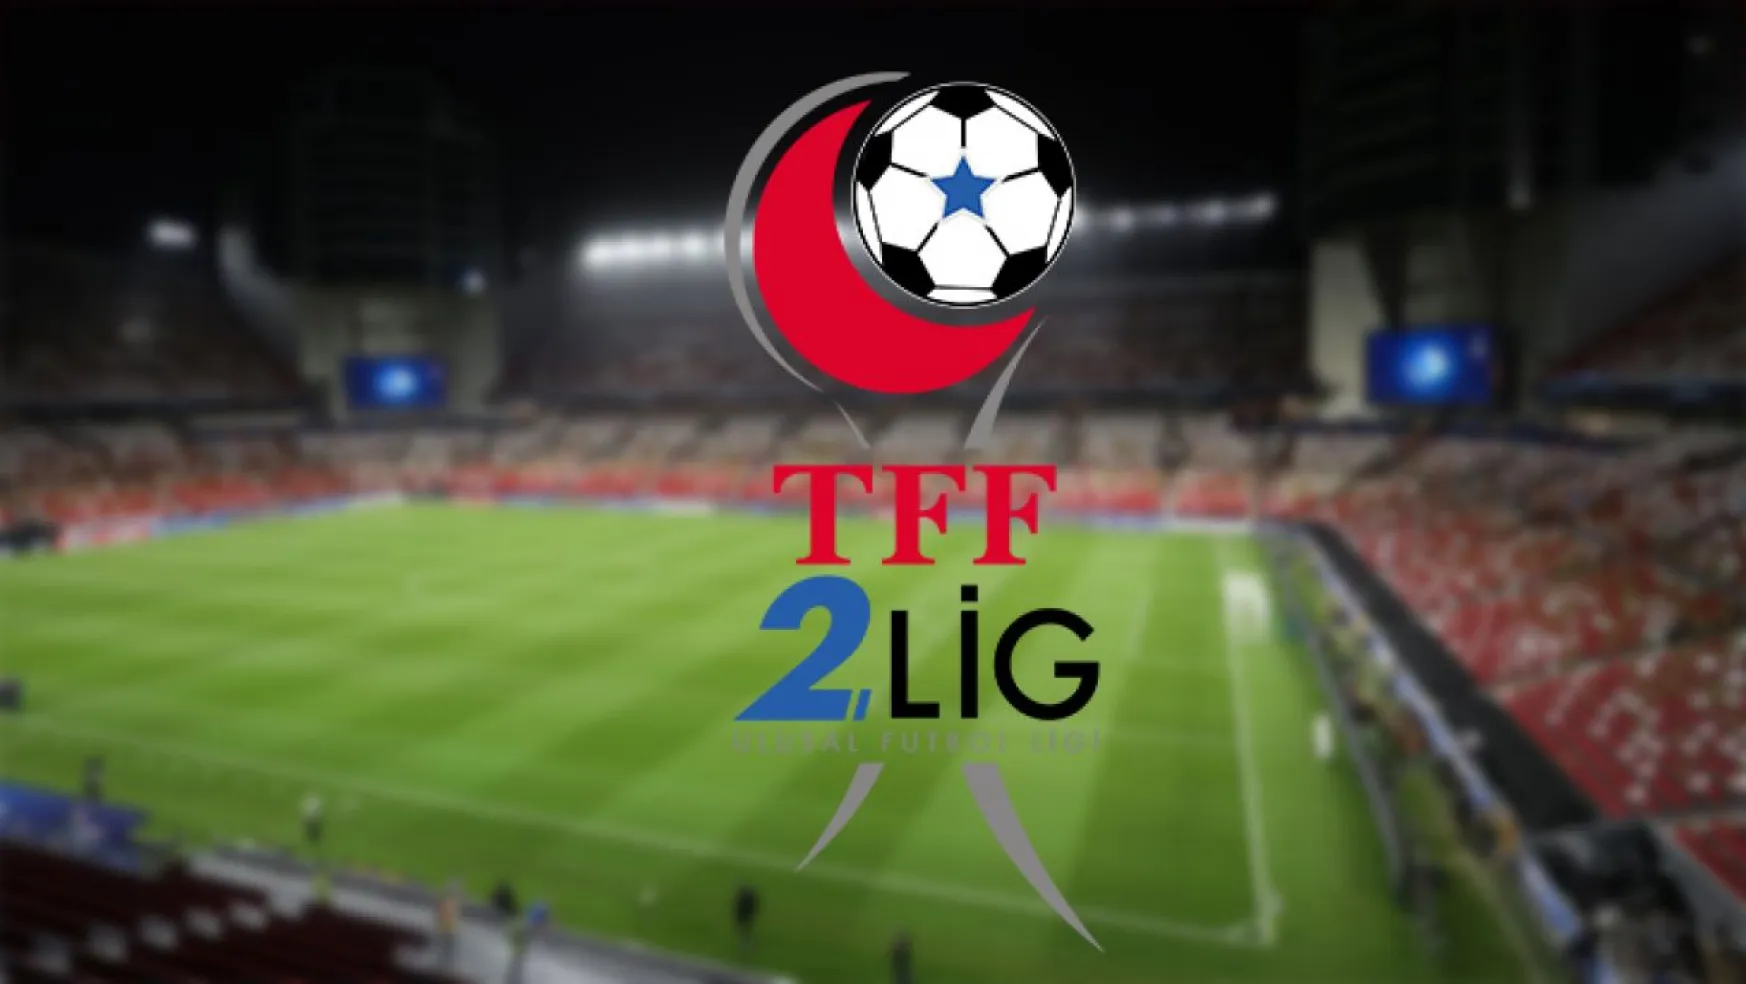 TFF 2. lig kırmızı grupta haftanın programı 